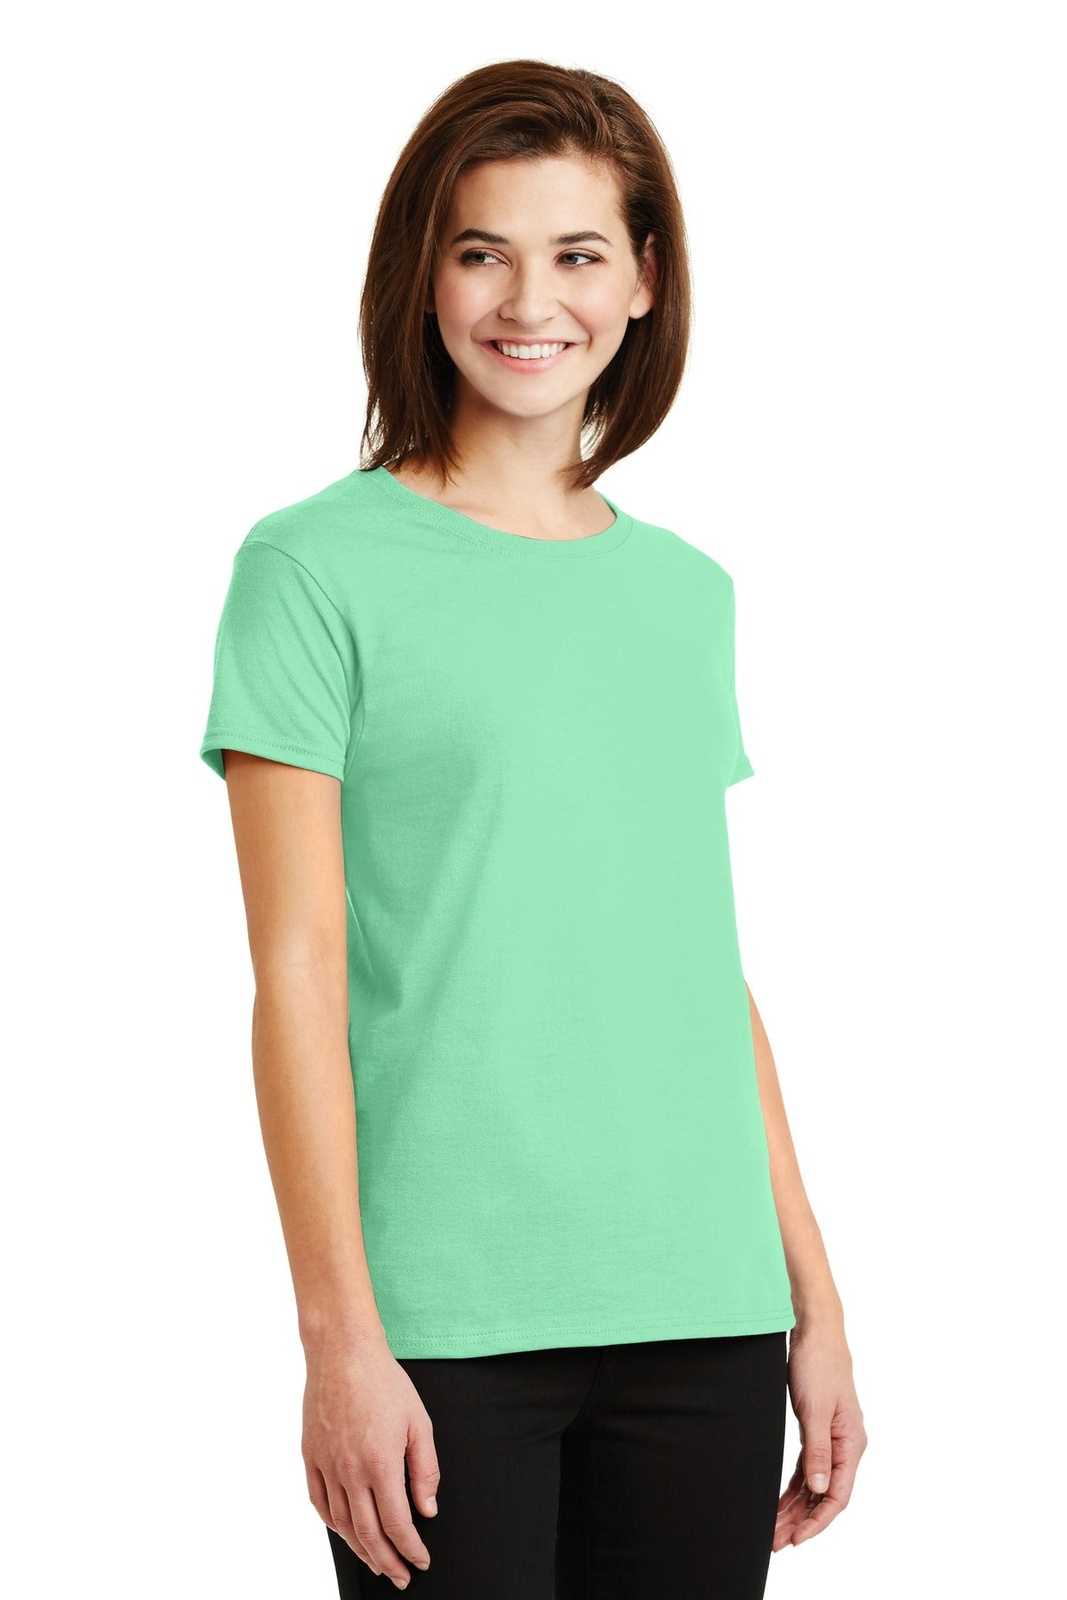 Gildan 2000L Ladies Ultra Cotton 100% Cotton T-Shirt - Mint Green - HIT a Double